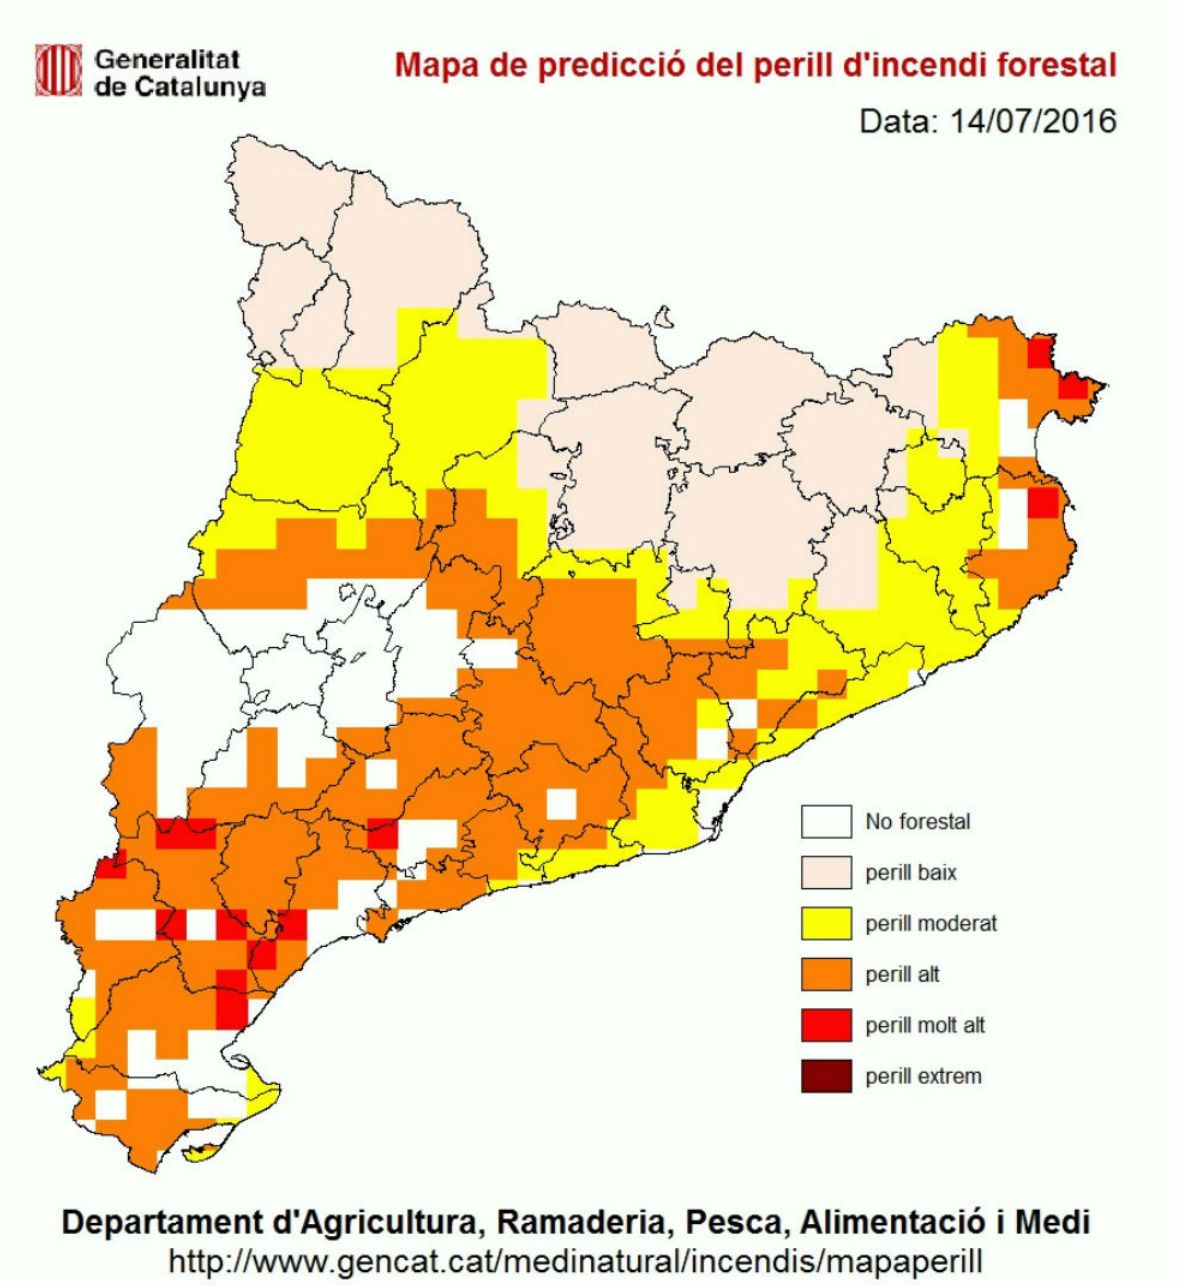 Once comarcas mantienen un riesgo muy elevado de incendios forestales